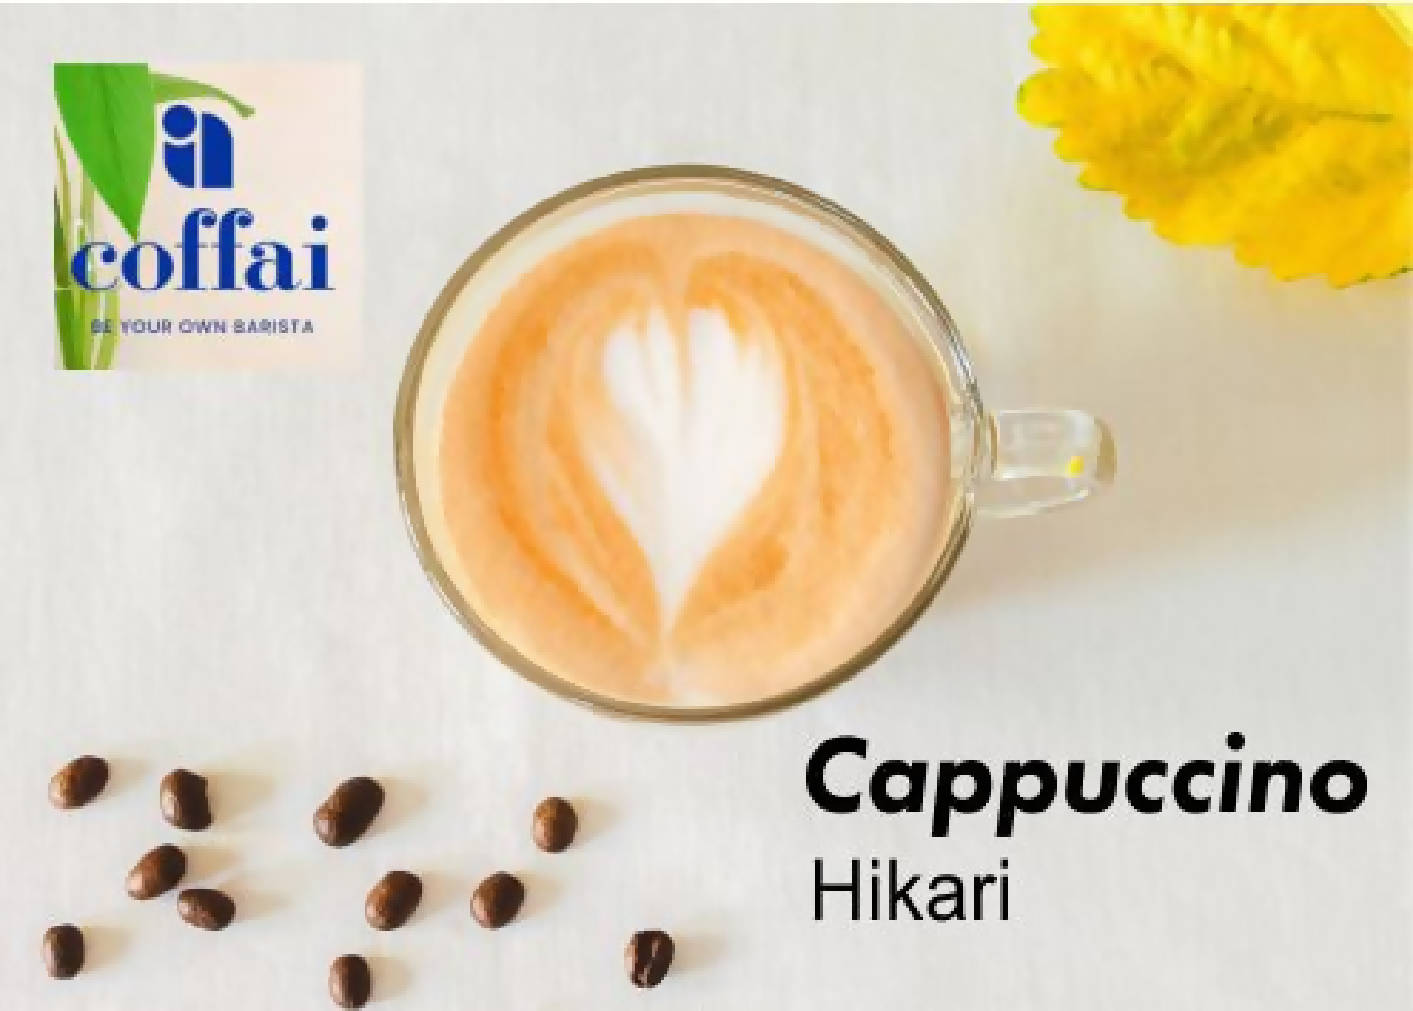 Coffai Cappuccino - Hikari